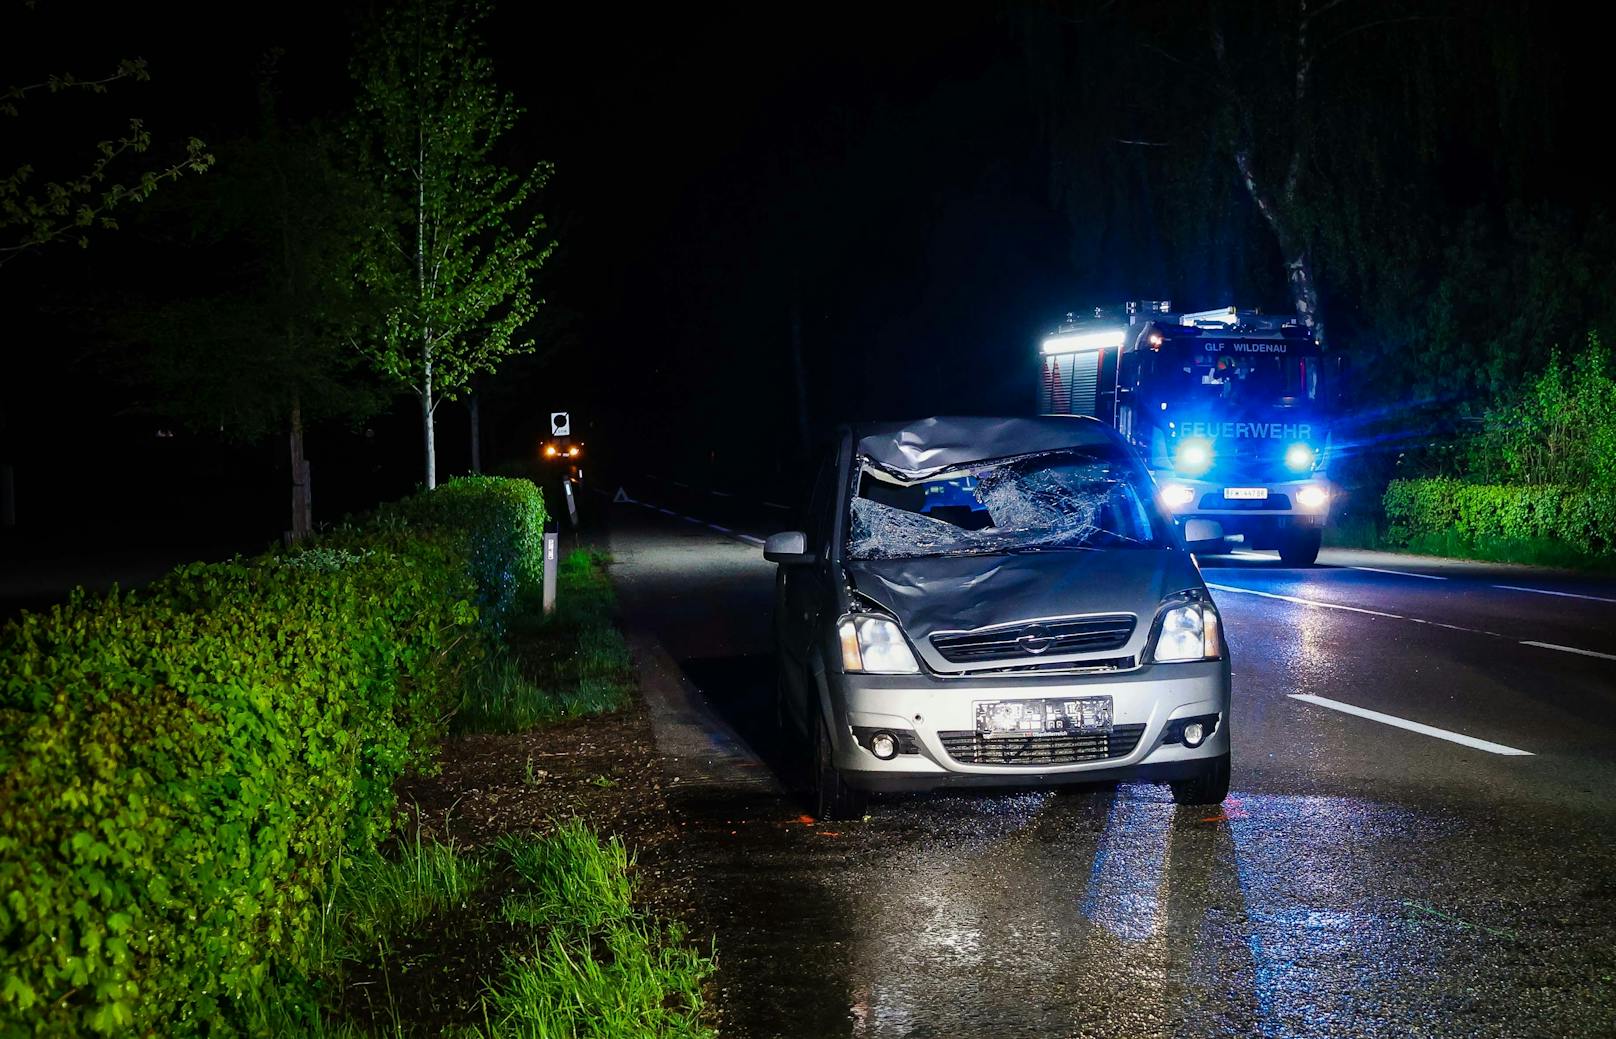 Ein 53-Jähriger aus dem Bezirk Braunau fuhr am Samstag gegen 21:45 Uhr mit seinem Pkw im Gemeindegebiet von Aspach auf der L507 Richtung Wildenau.